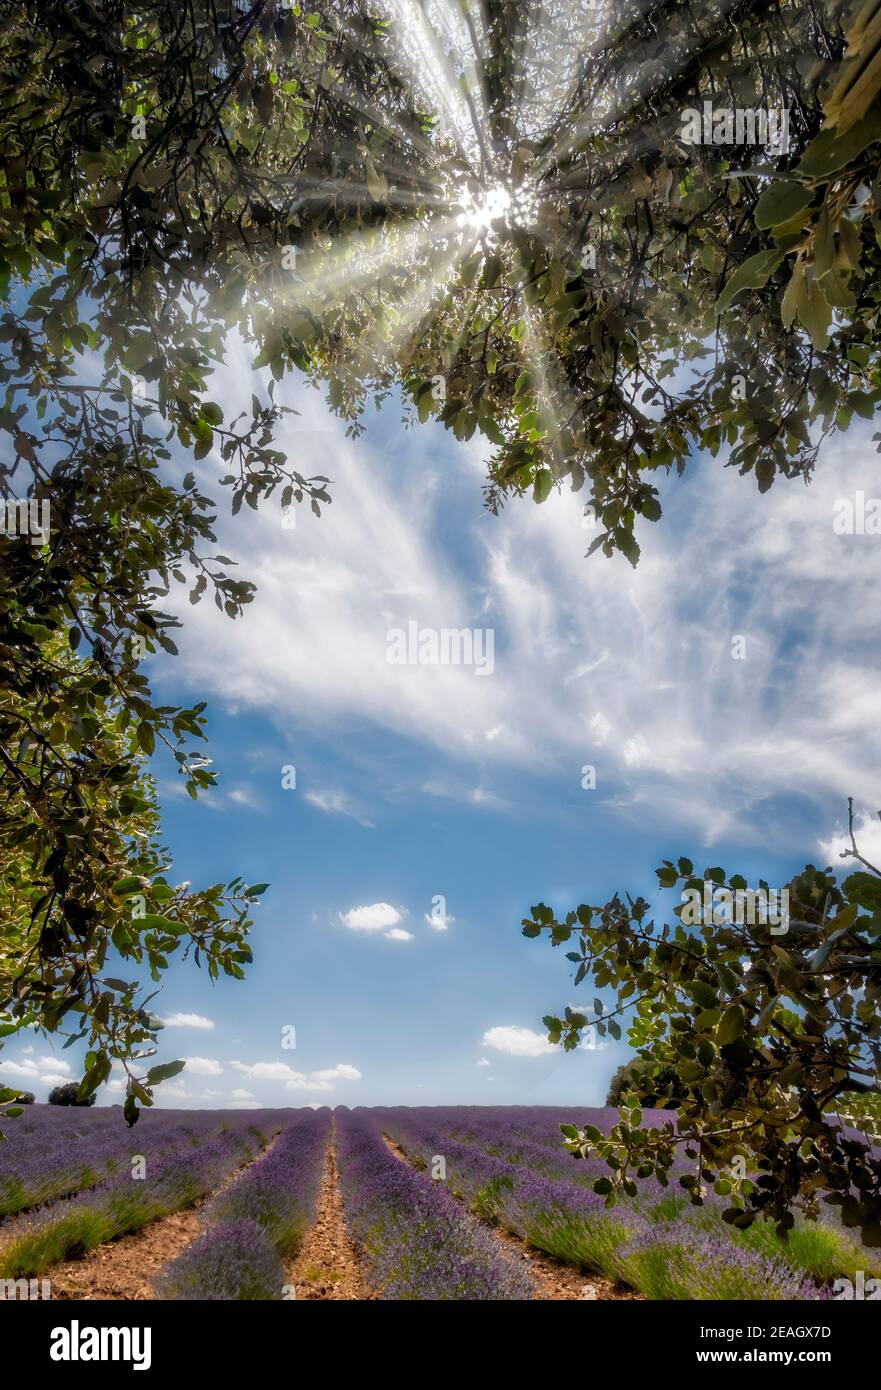 campi di lavanda in piena fioritura visti attraverso i rami di un albero in primo piano attraverso il quale la luce del sole filtra, verticale Foto Stock